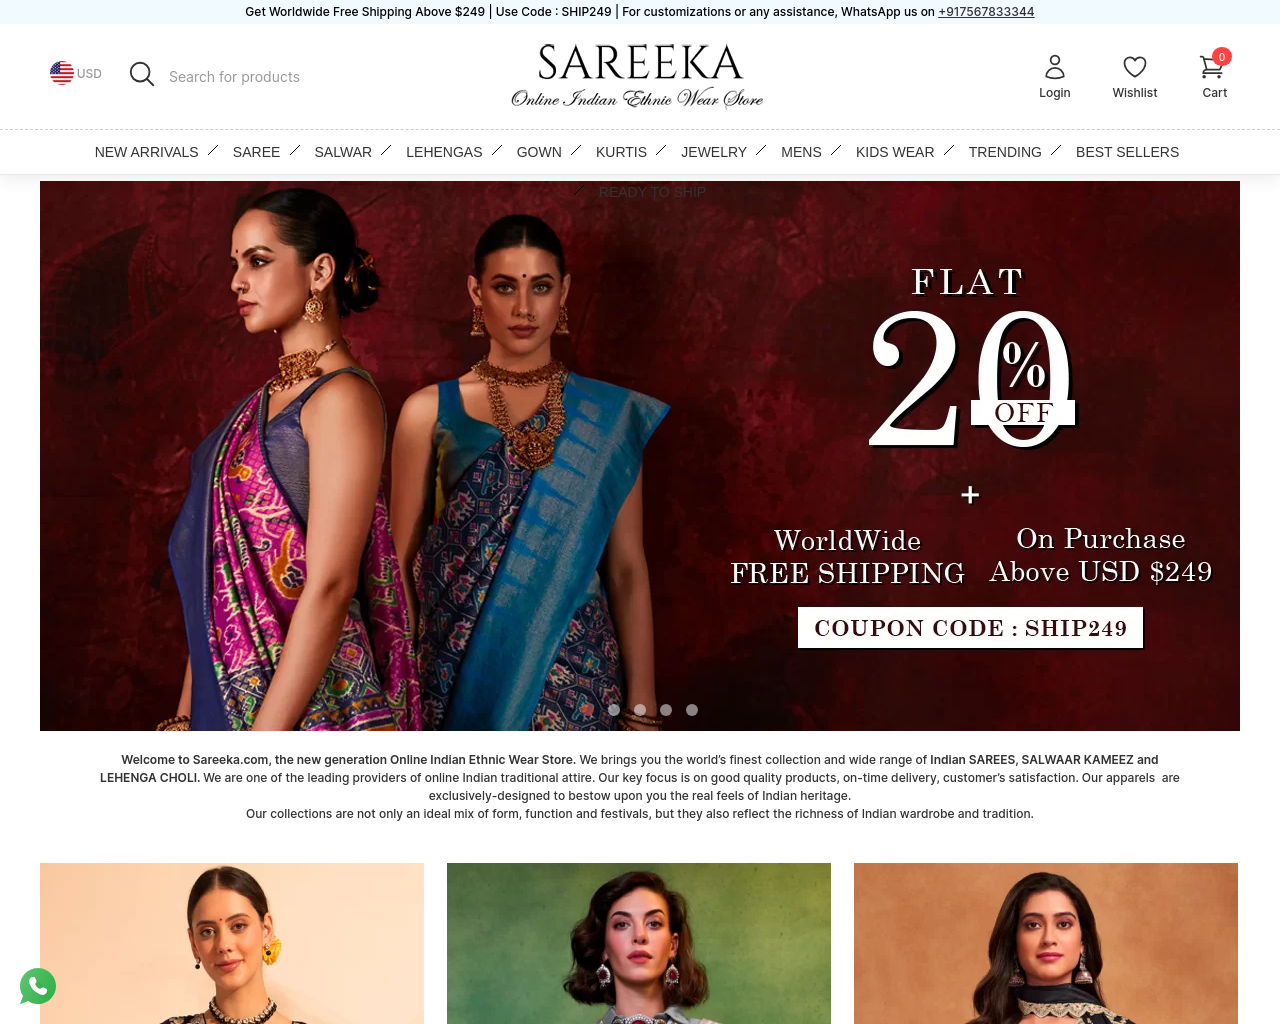 sareeka.com